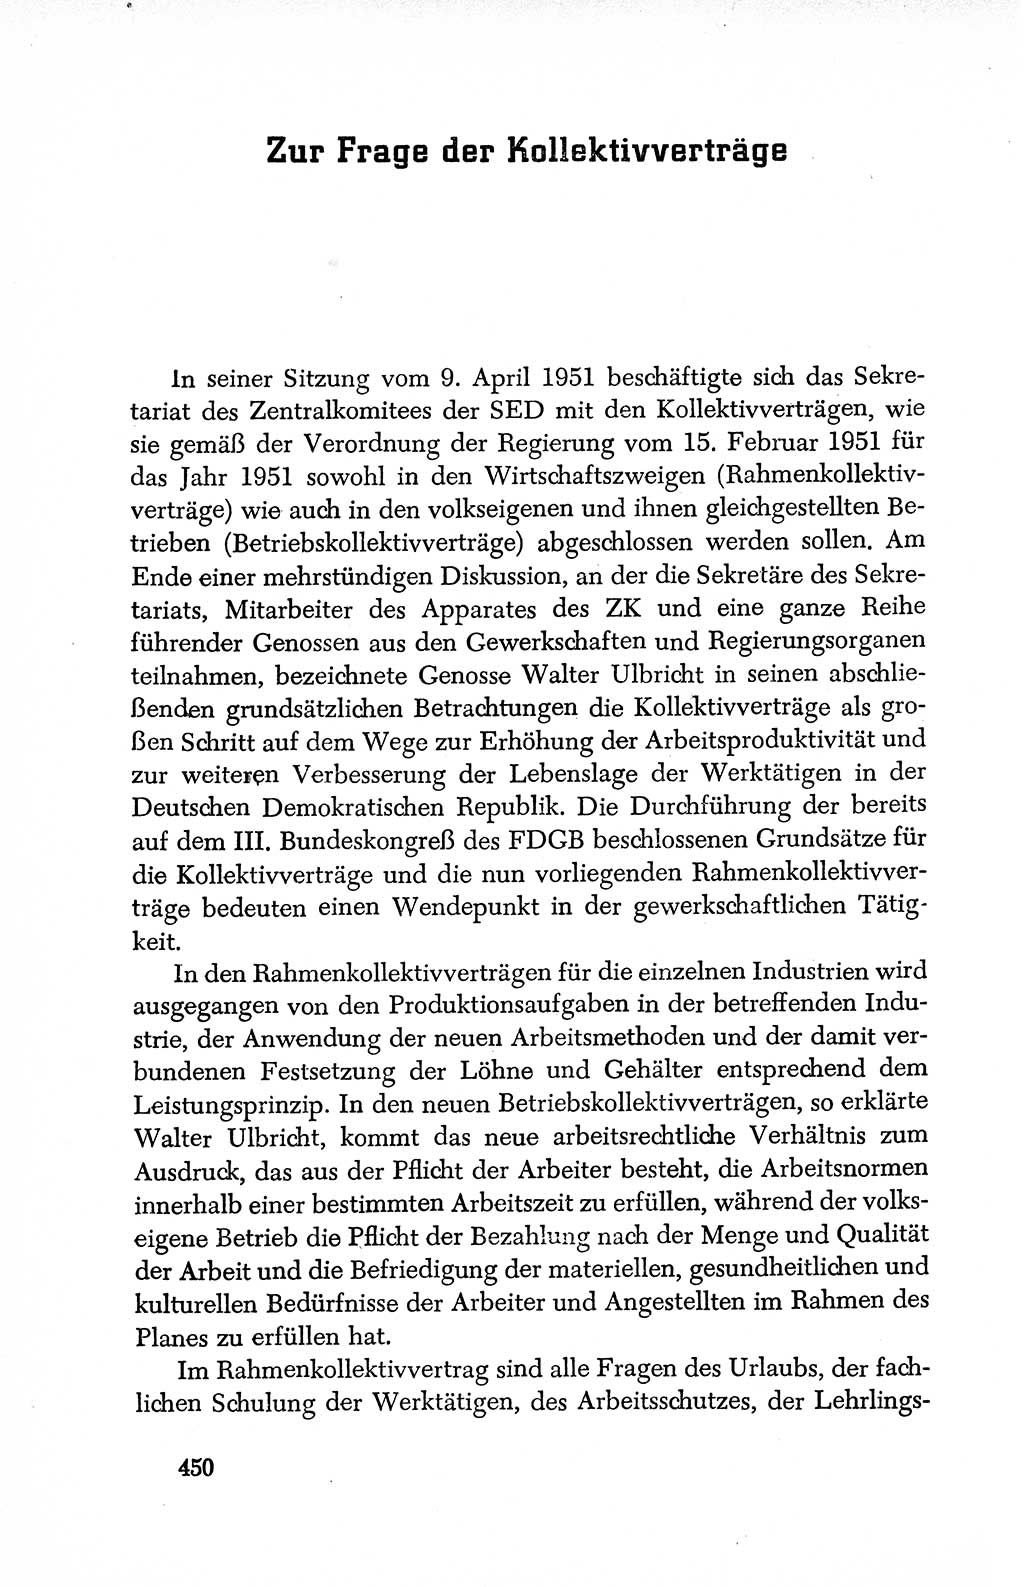 Dokumente der Sozialistischen Einheitspartei Deutschlands (SED) [Deutsche Demokratische Republik (DDR)] 1950-1952, Seite 450 (Dok. SED DDR 1950-1952, S. 450)